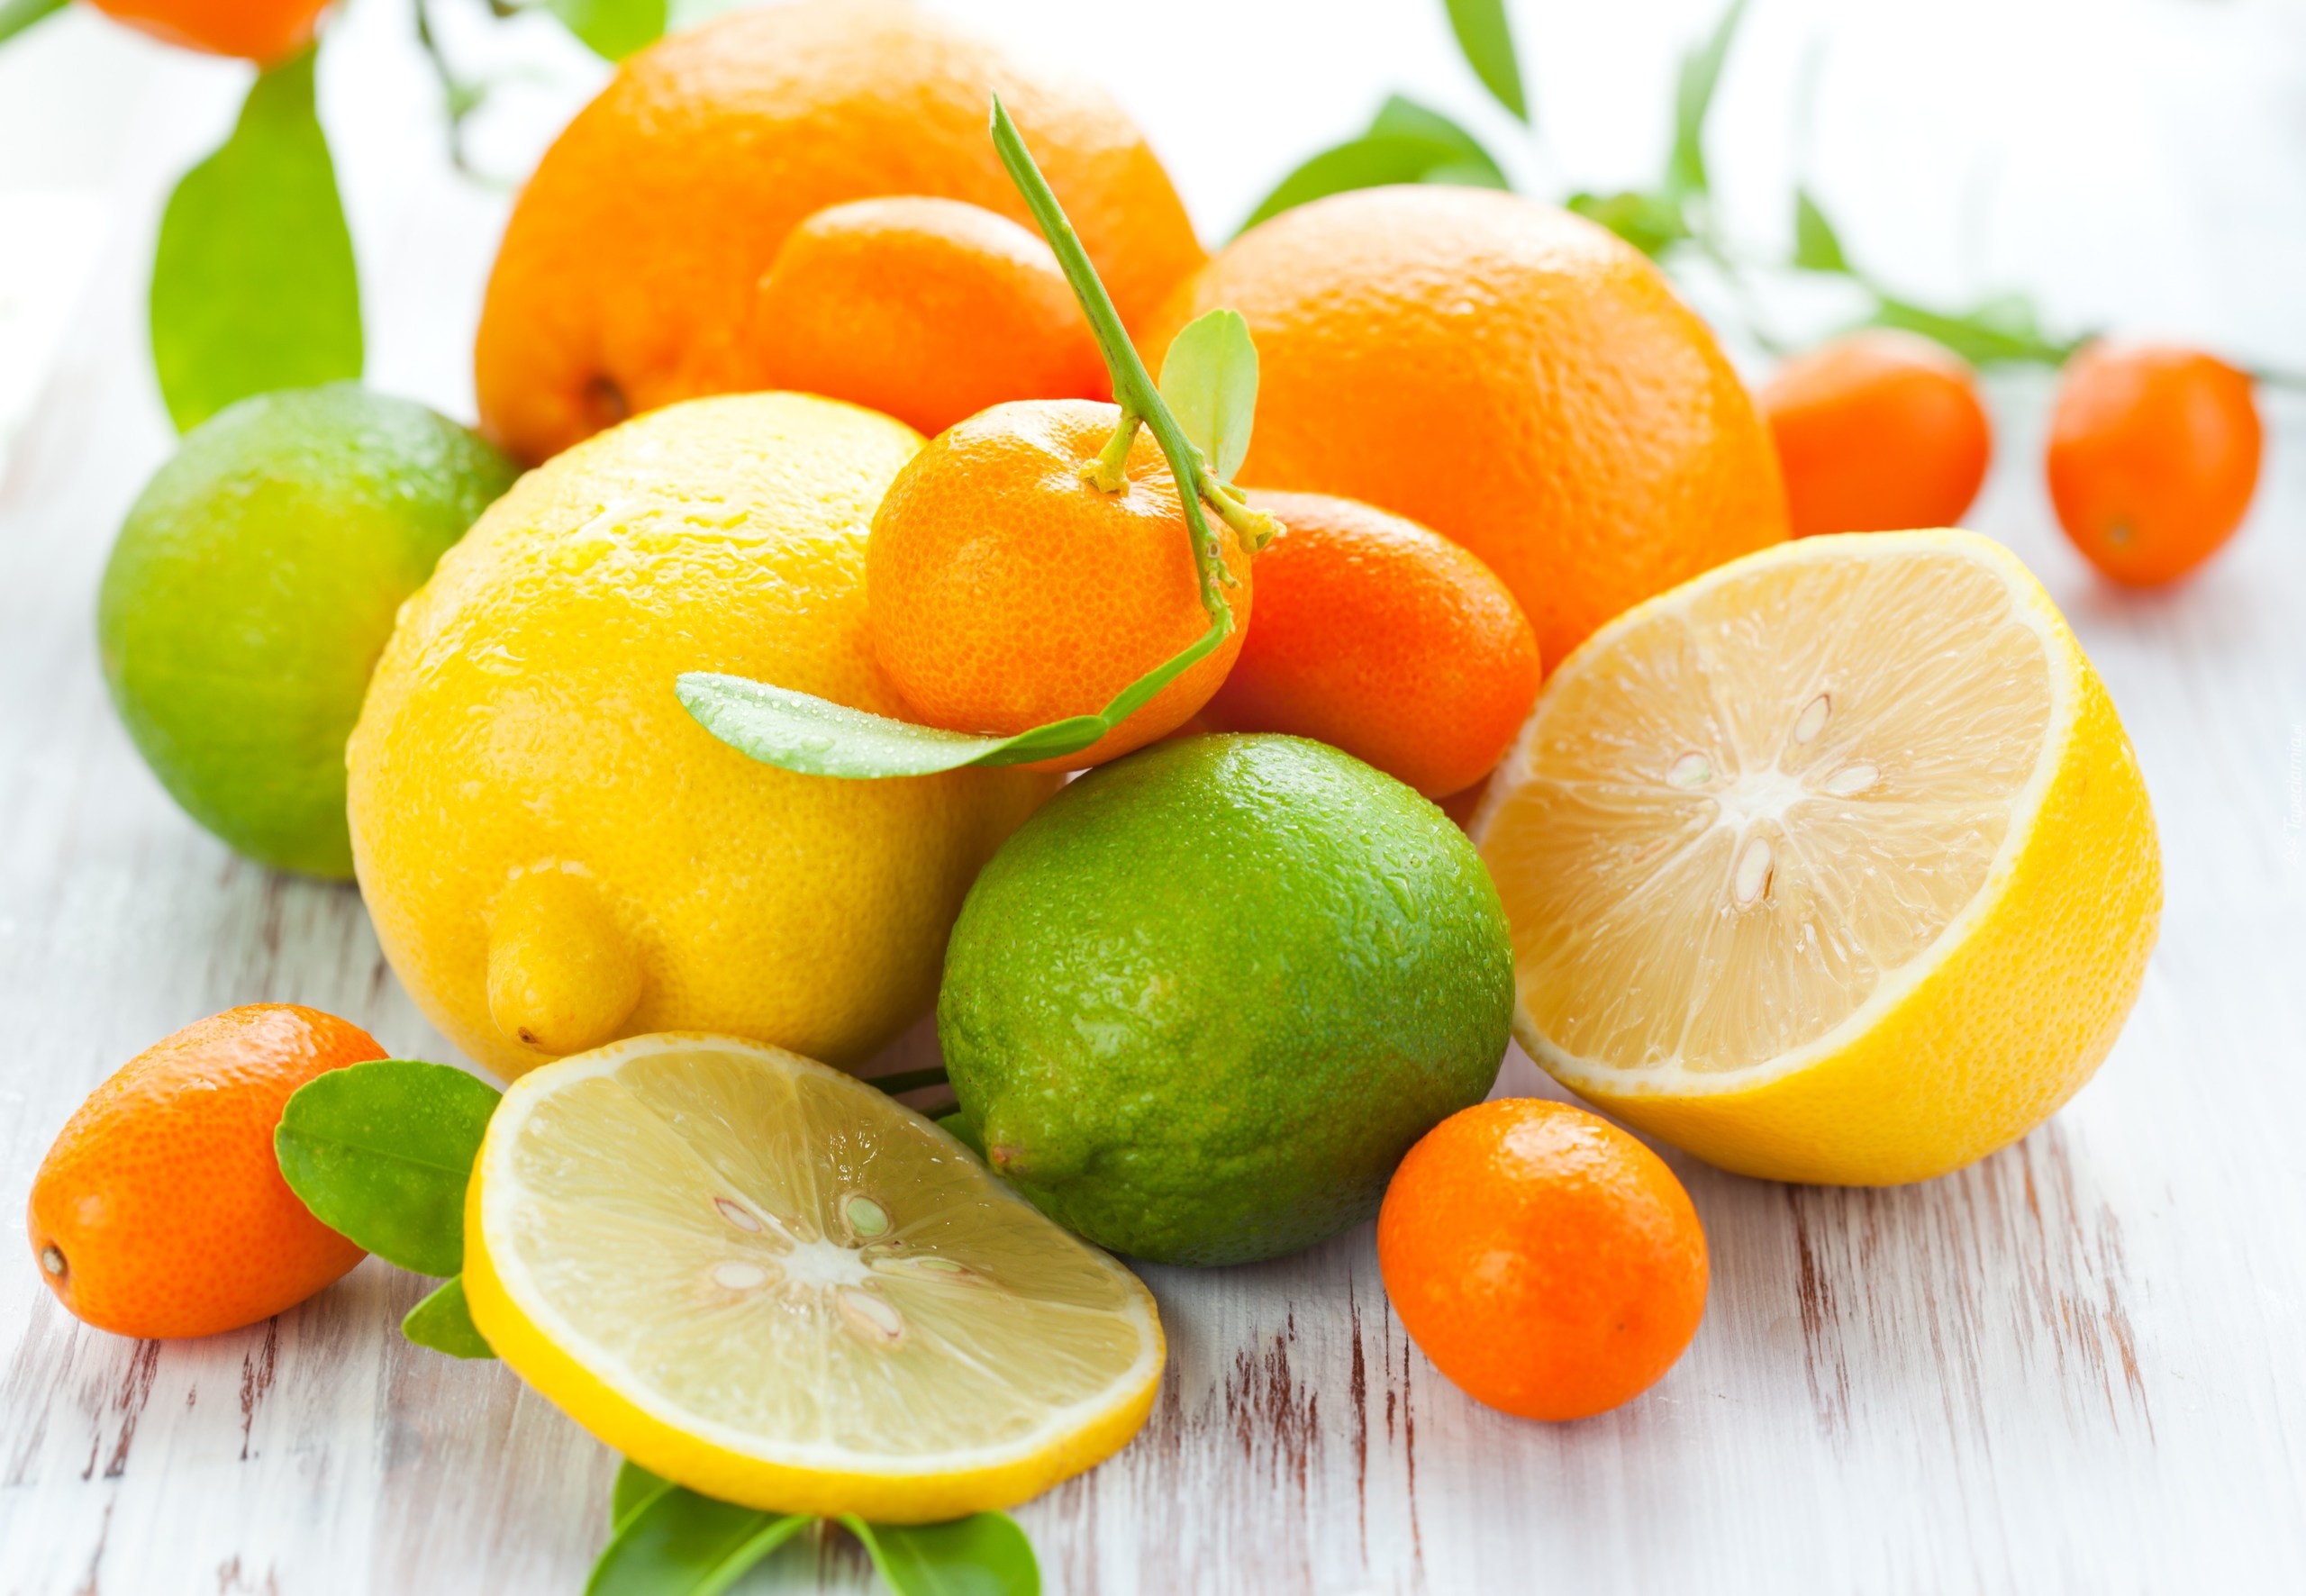 Owoce, Cytrusy, Cytryny, Limonki, Kumkwaty, Mandarynka, Pomarańcze